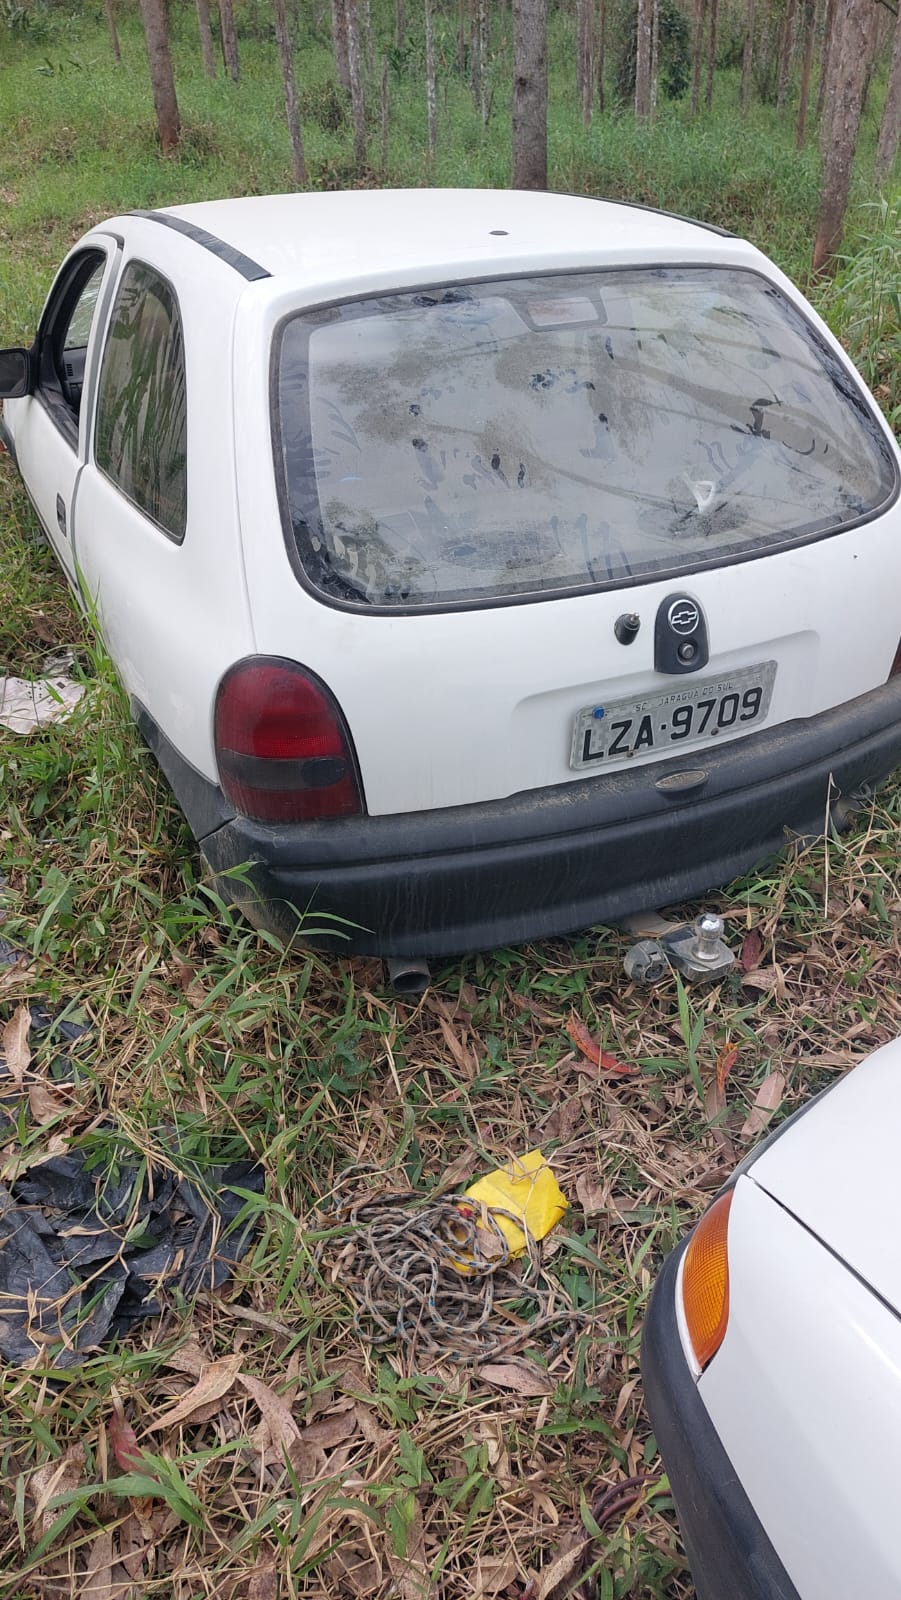 Polícia confirma denúncia de carros abandonados em Balneário Piçarras